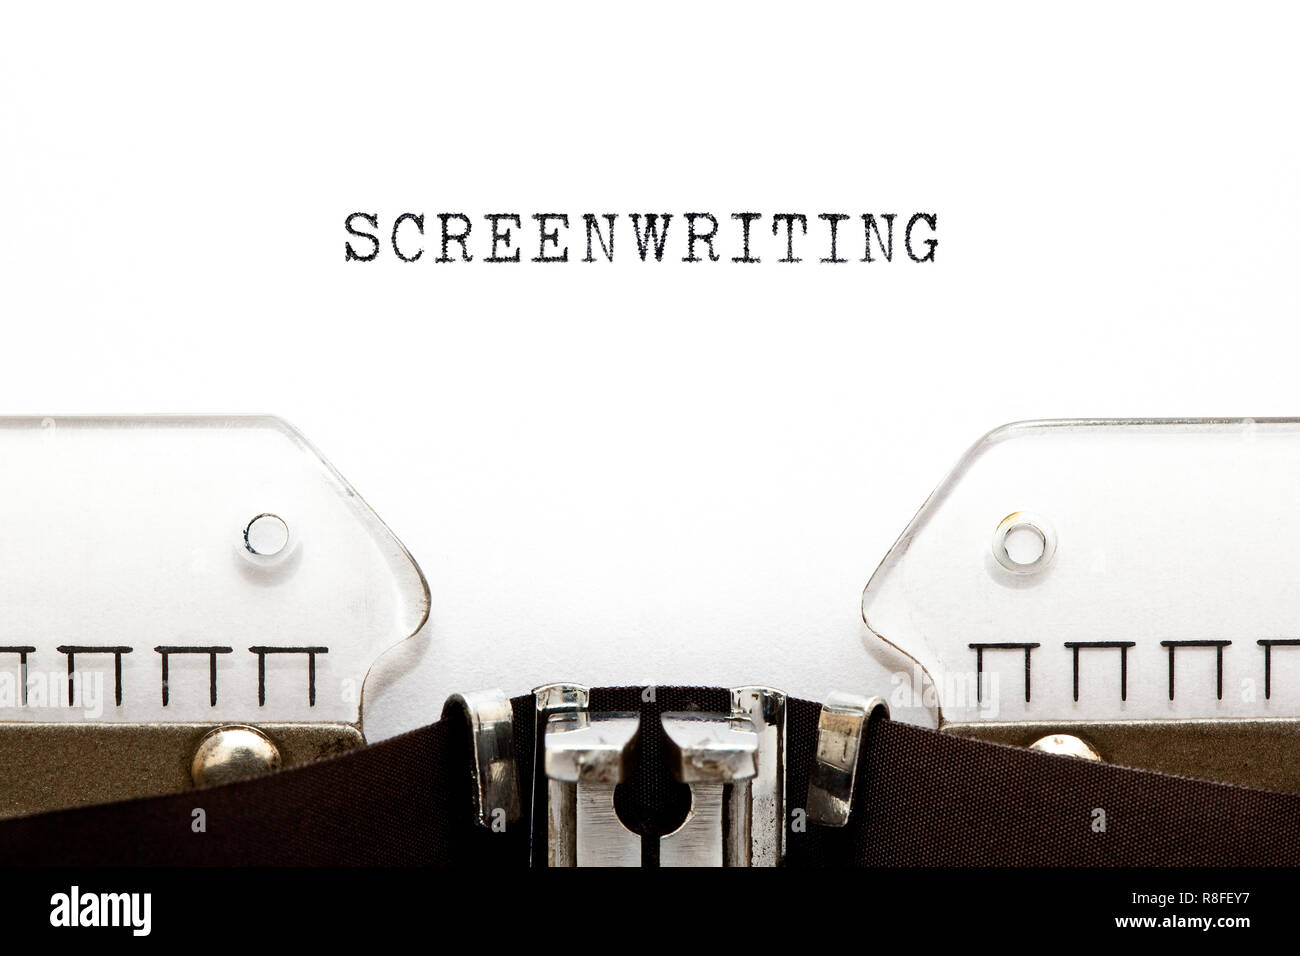 La sceneggiatura di parola digitata sulla macchina da scrivere retrò con copia spazio. Foto Stock